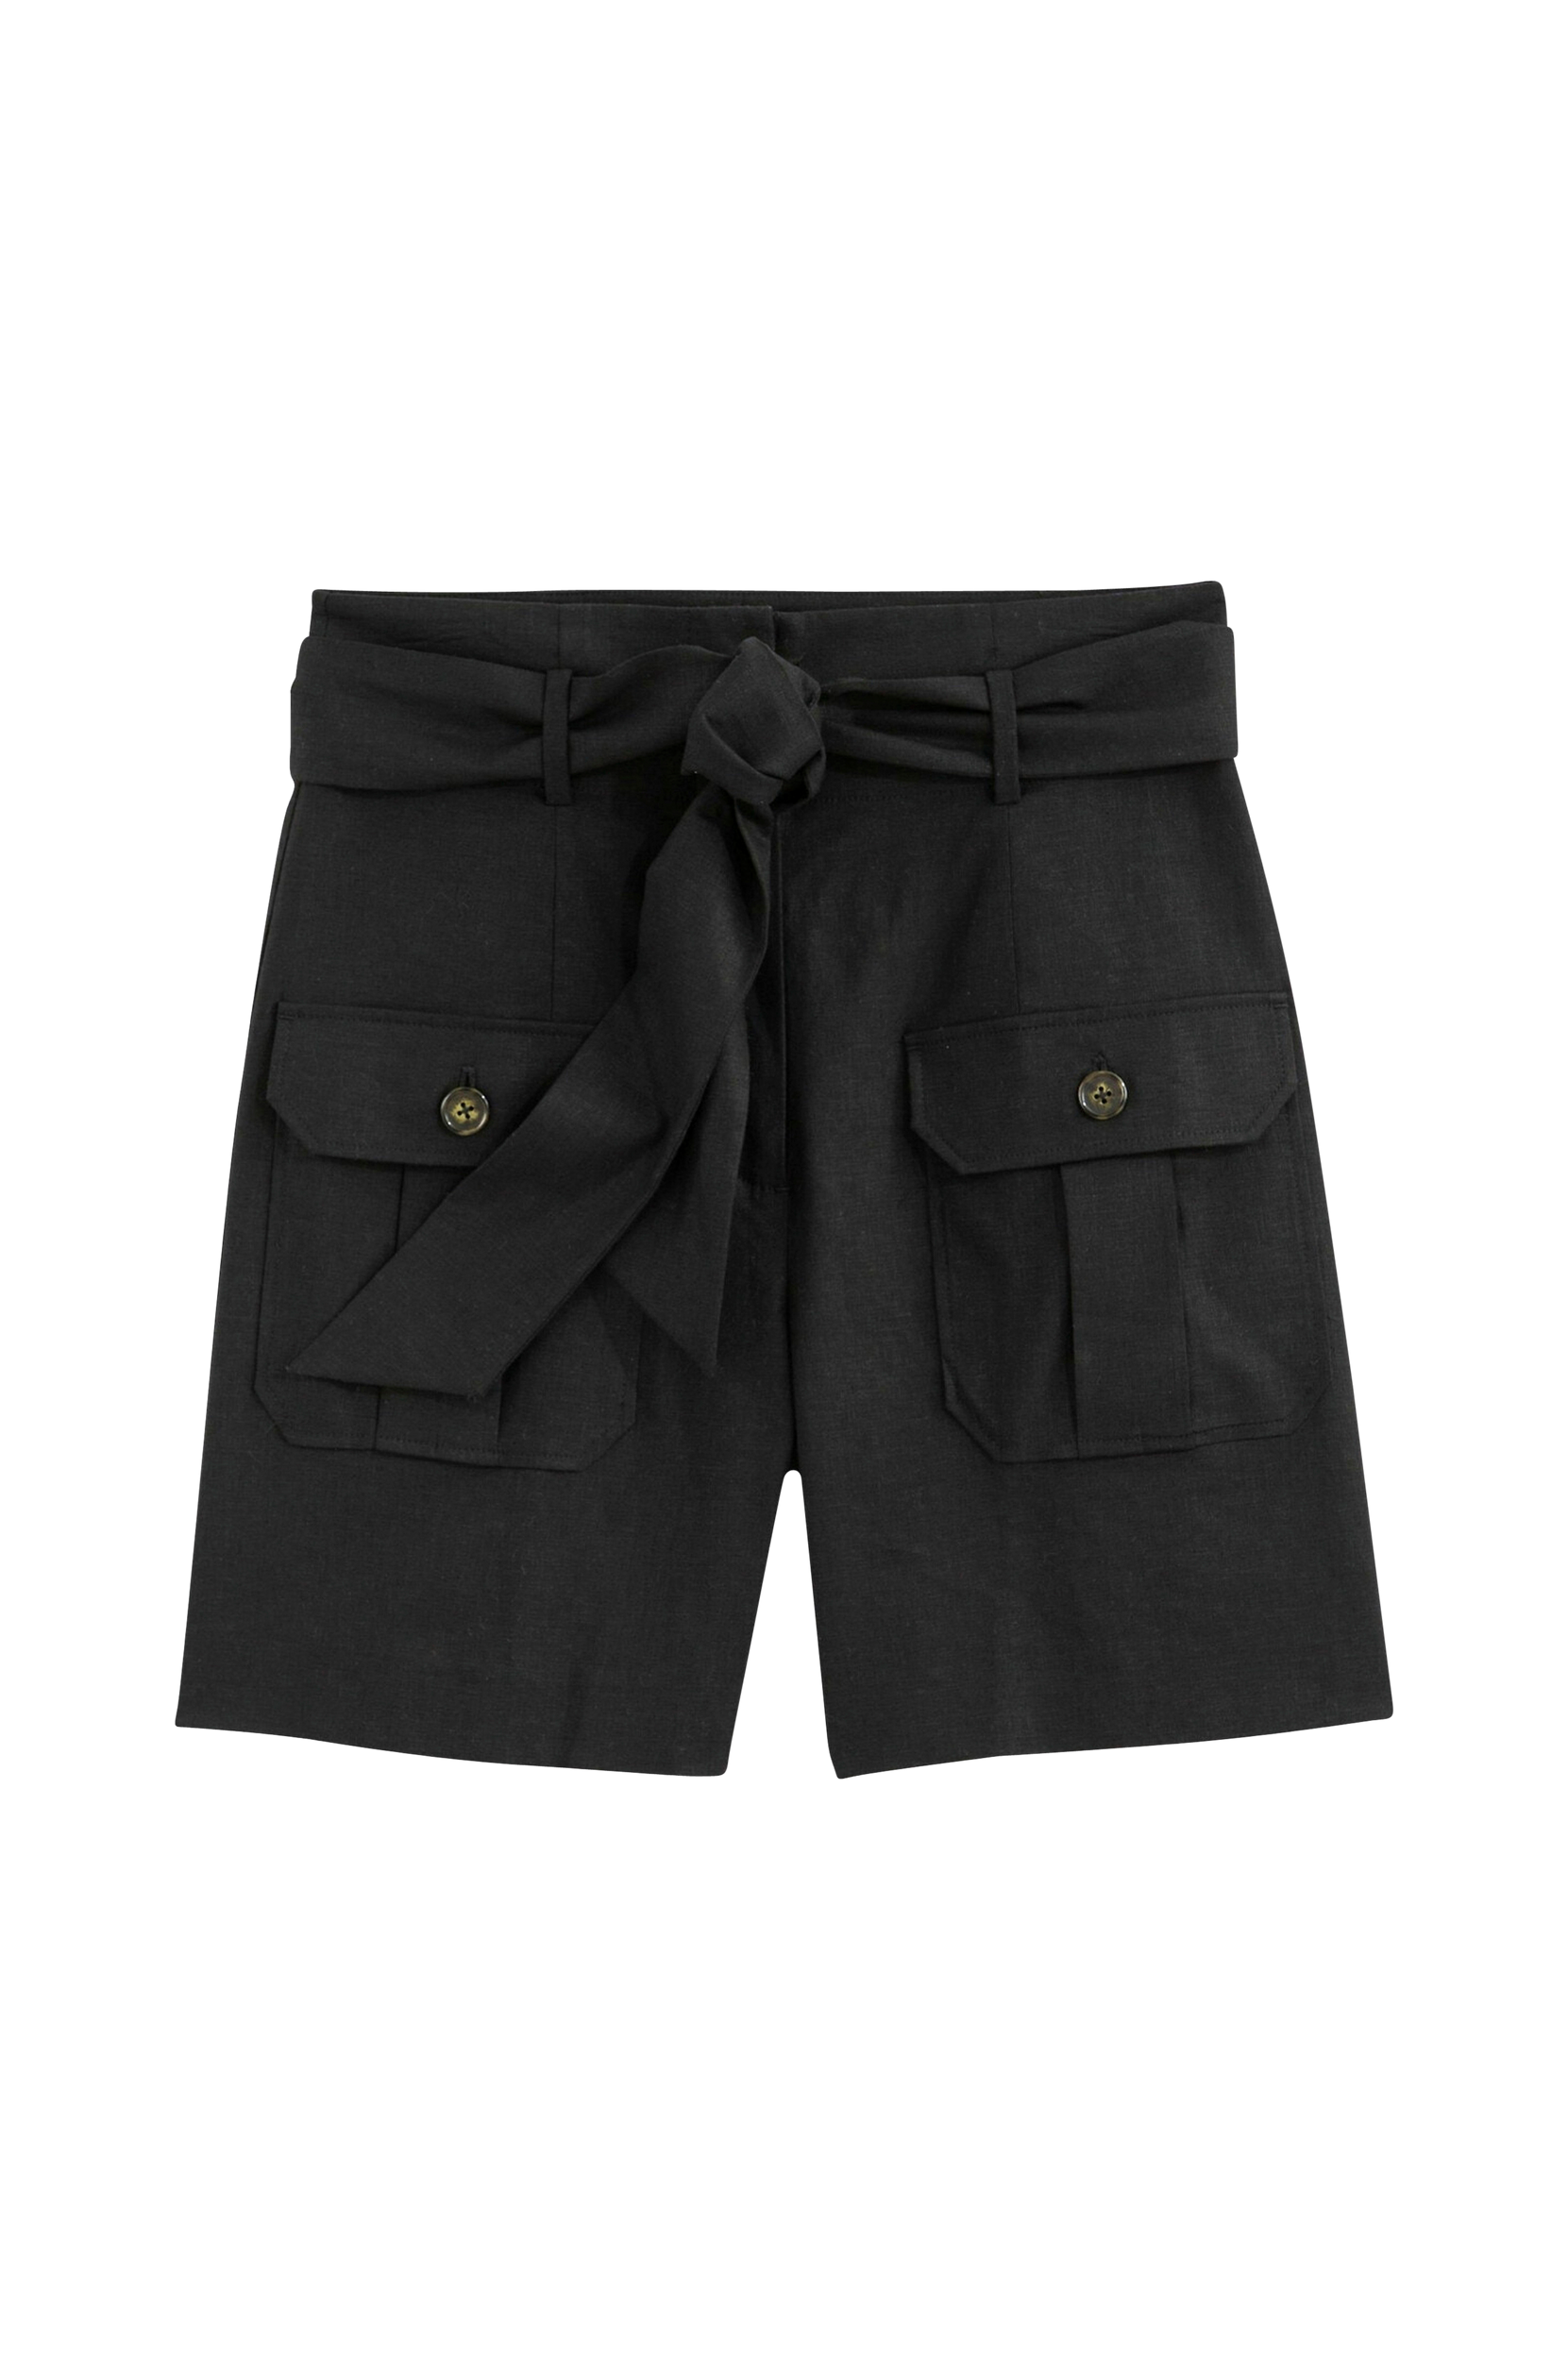 La Redoute - Shorts i hørblanding med bindebælte - Sort - 52